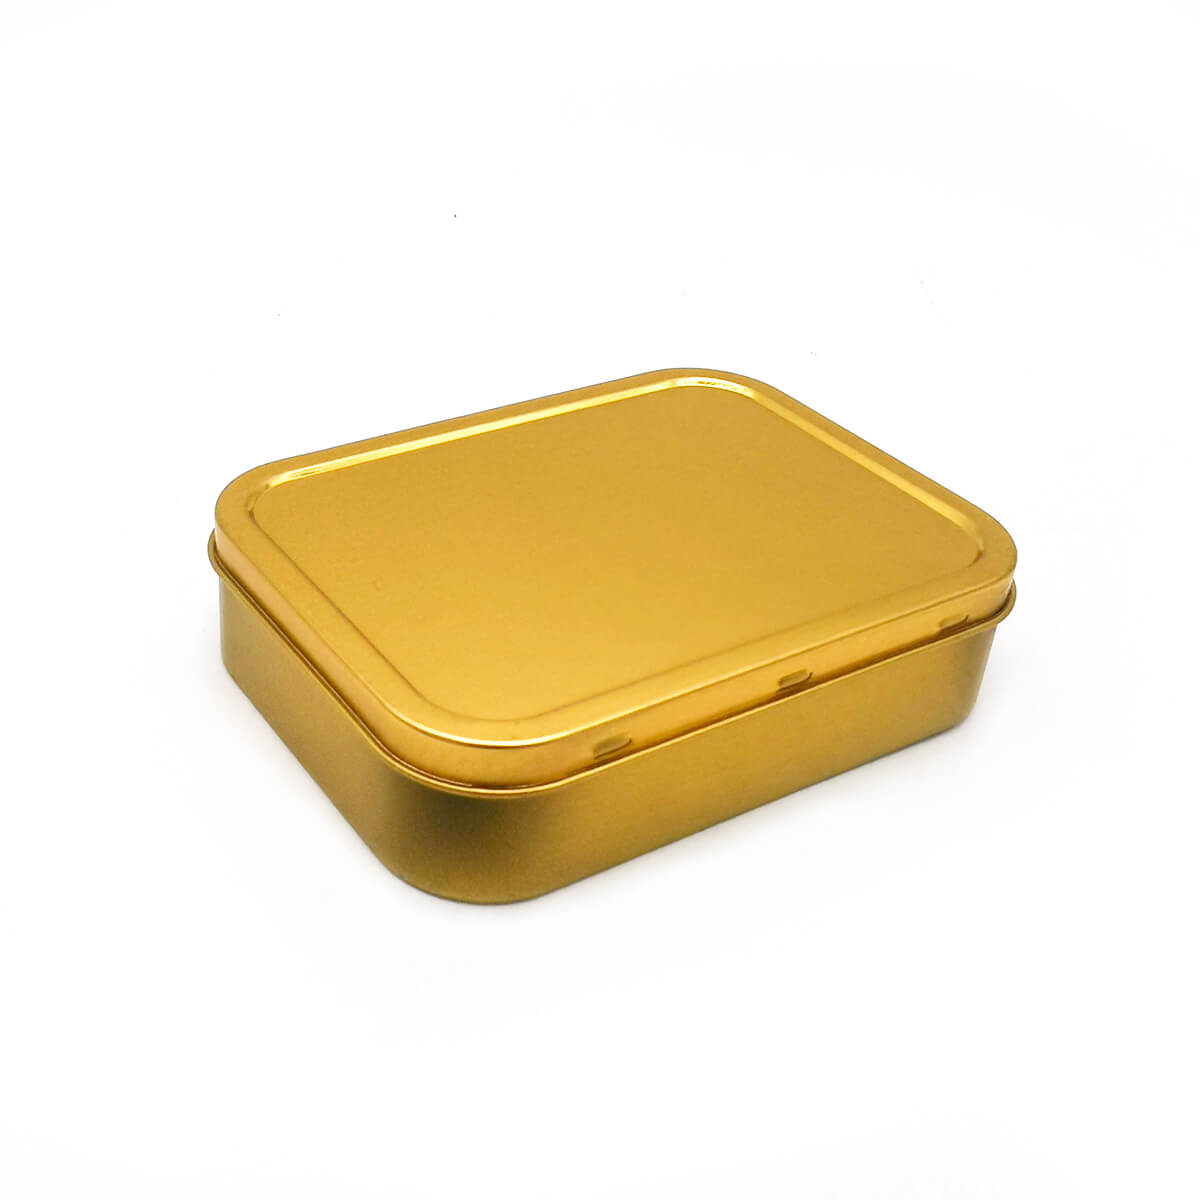 2oz (125ml) герметичная золотая и серебряная табачная жестяная коробка